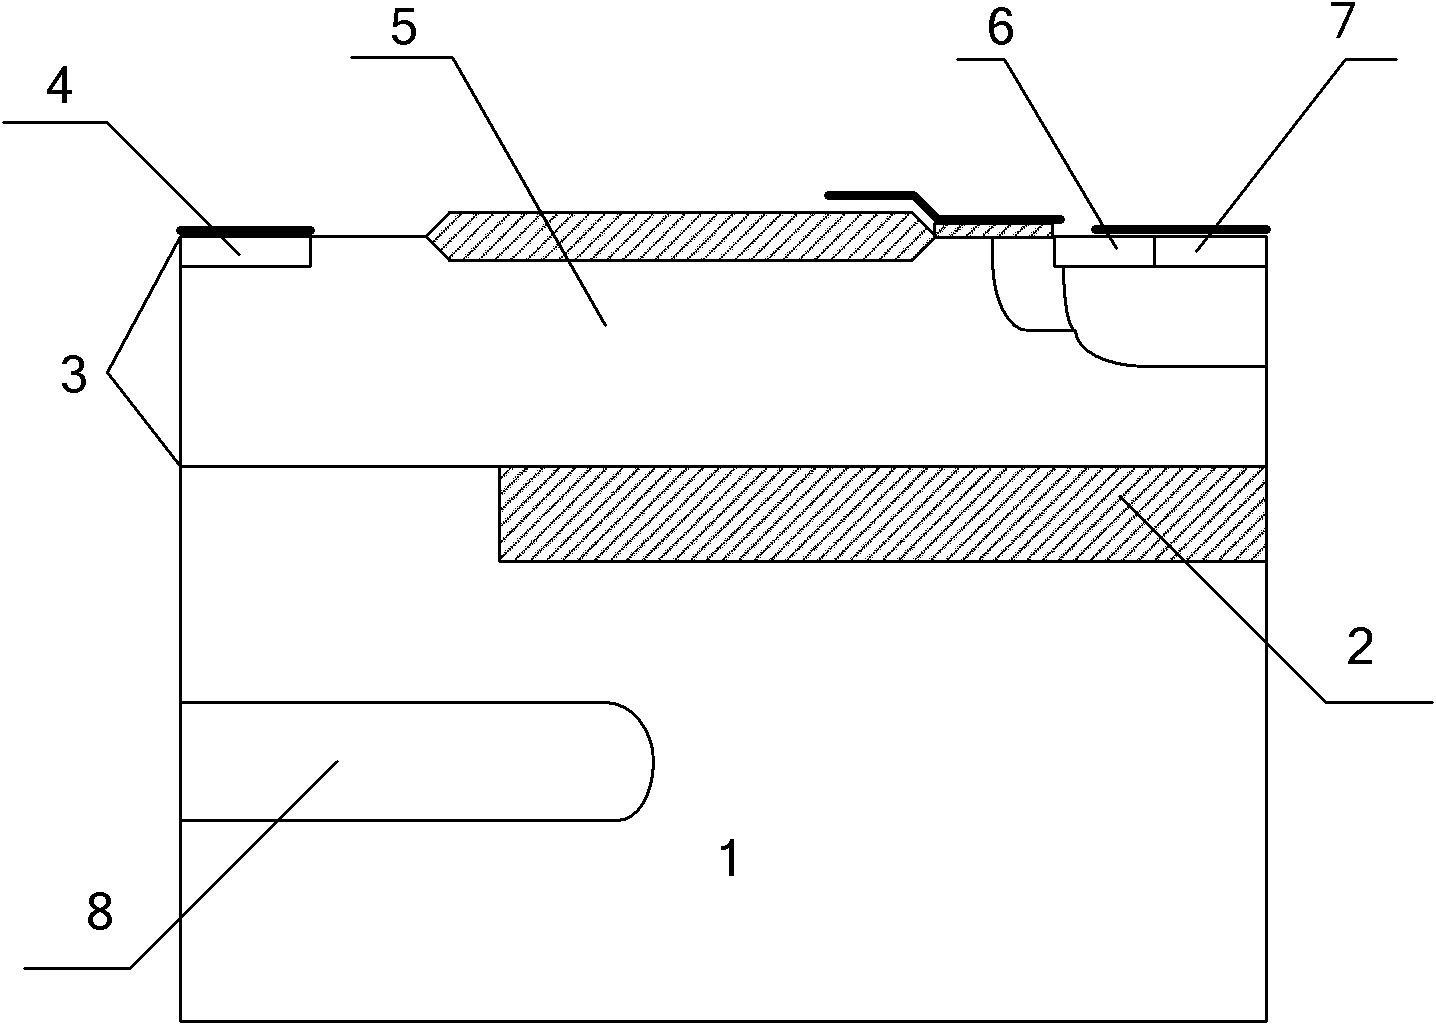 Partial SOI (silicon on insulator) traverse double-diffused device